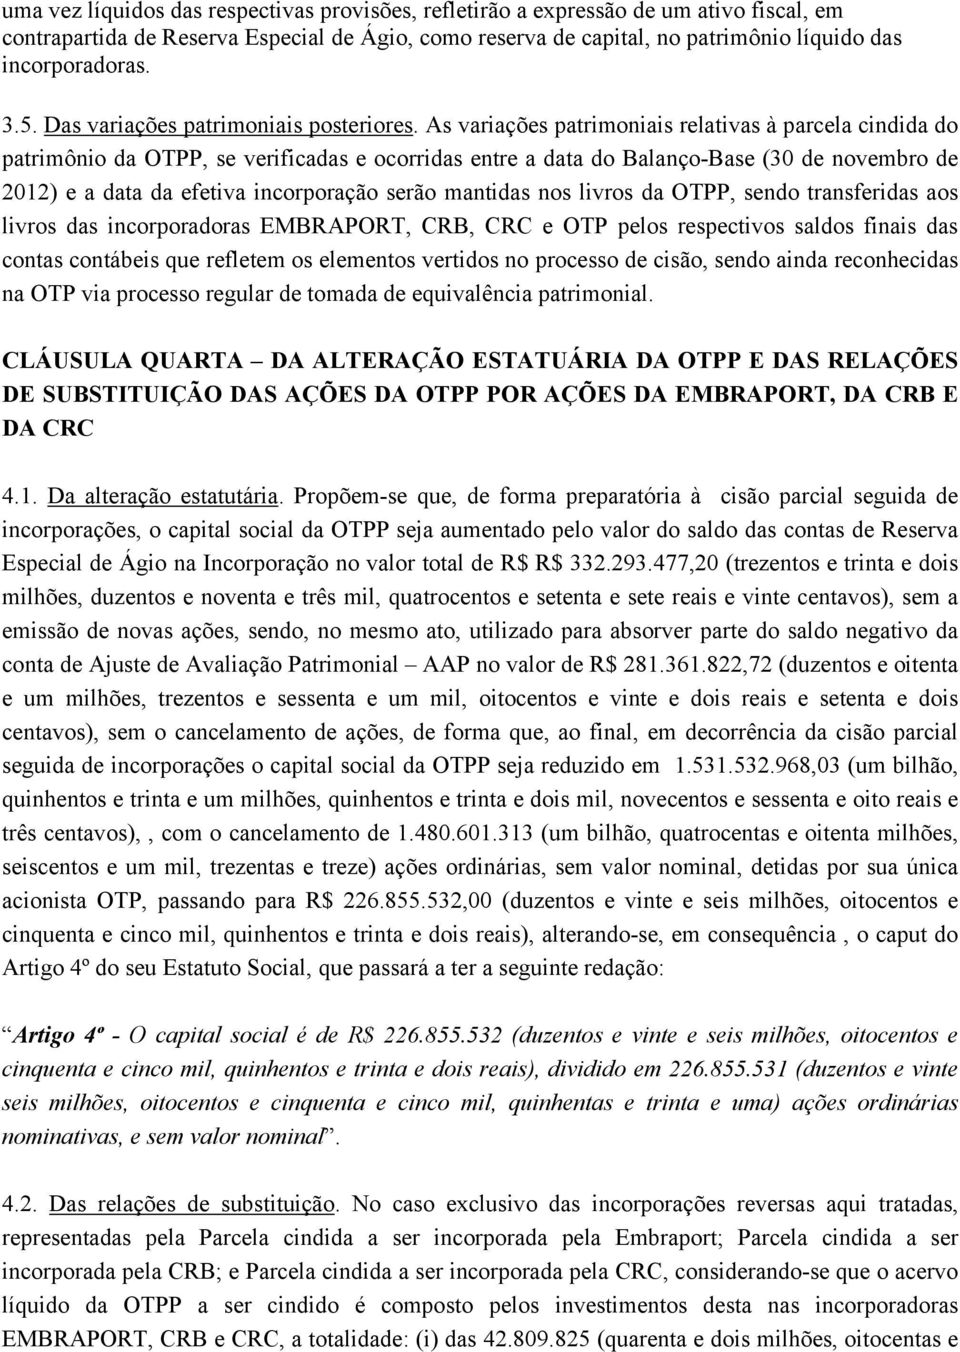 As variações patrimoniais relativas à parcela cindida do patrimônio da OTPP, se verificadas e ocorridas entre a data do Balanço-Base (30 de novembro de 2012) e a data da efetiva incorporação serão